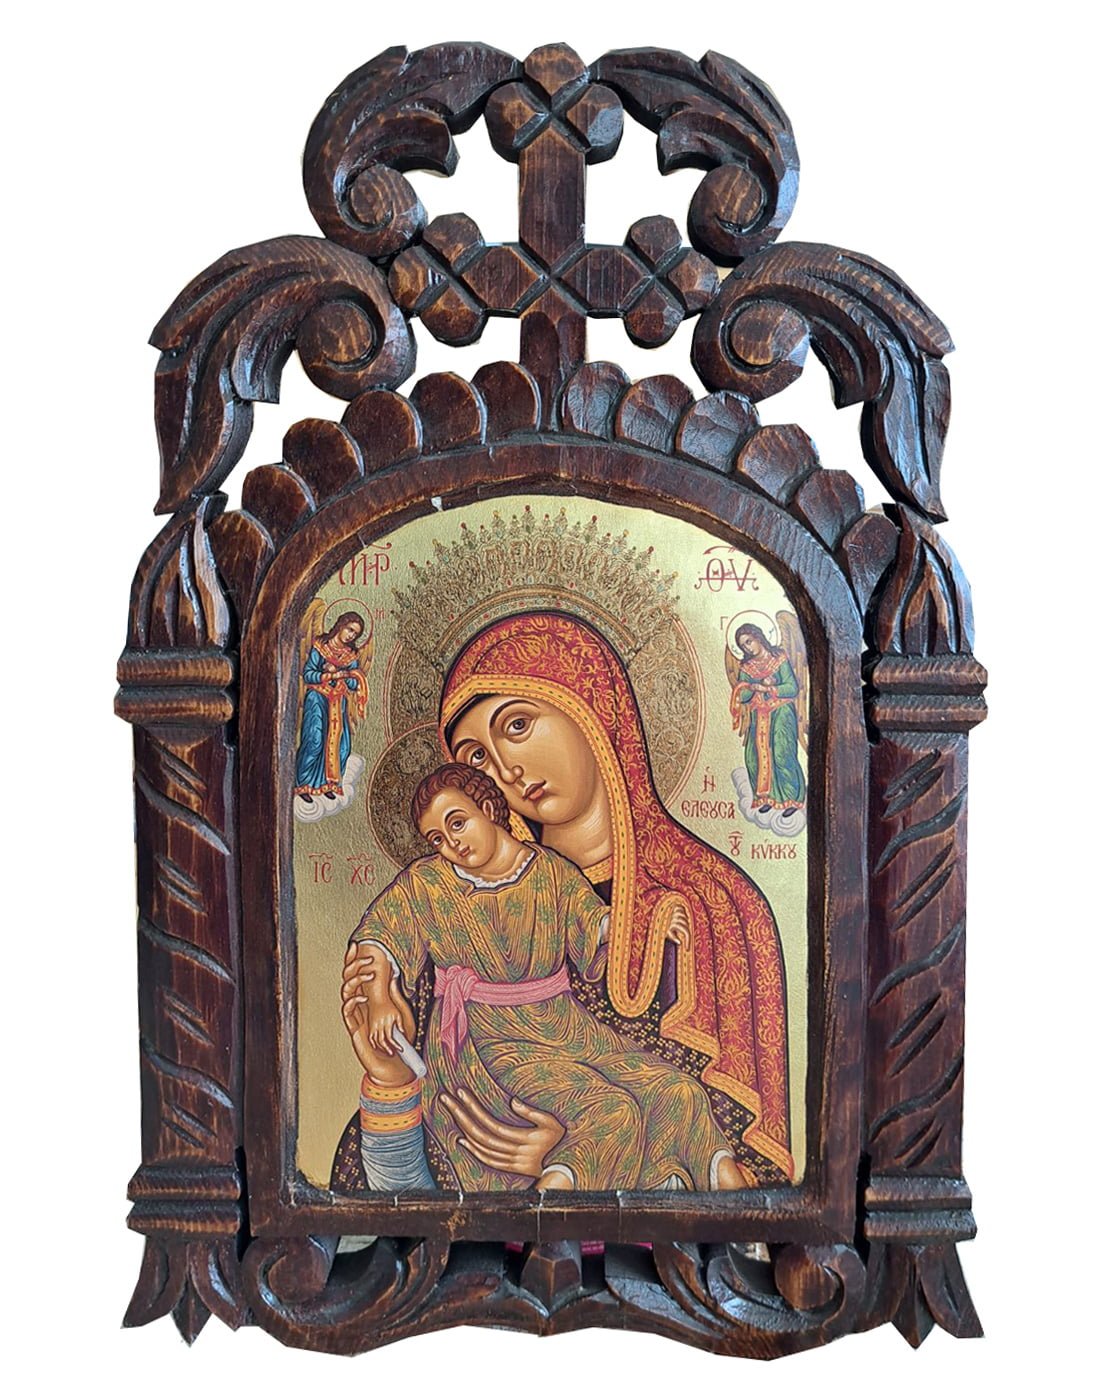 Χειροποίητο Ξυλόγλυπτο Παναγία του Κύκκου Virgin Mary of mount Kikkos Icon